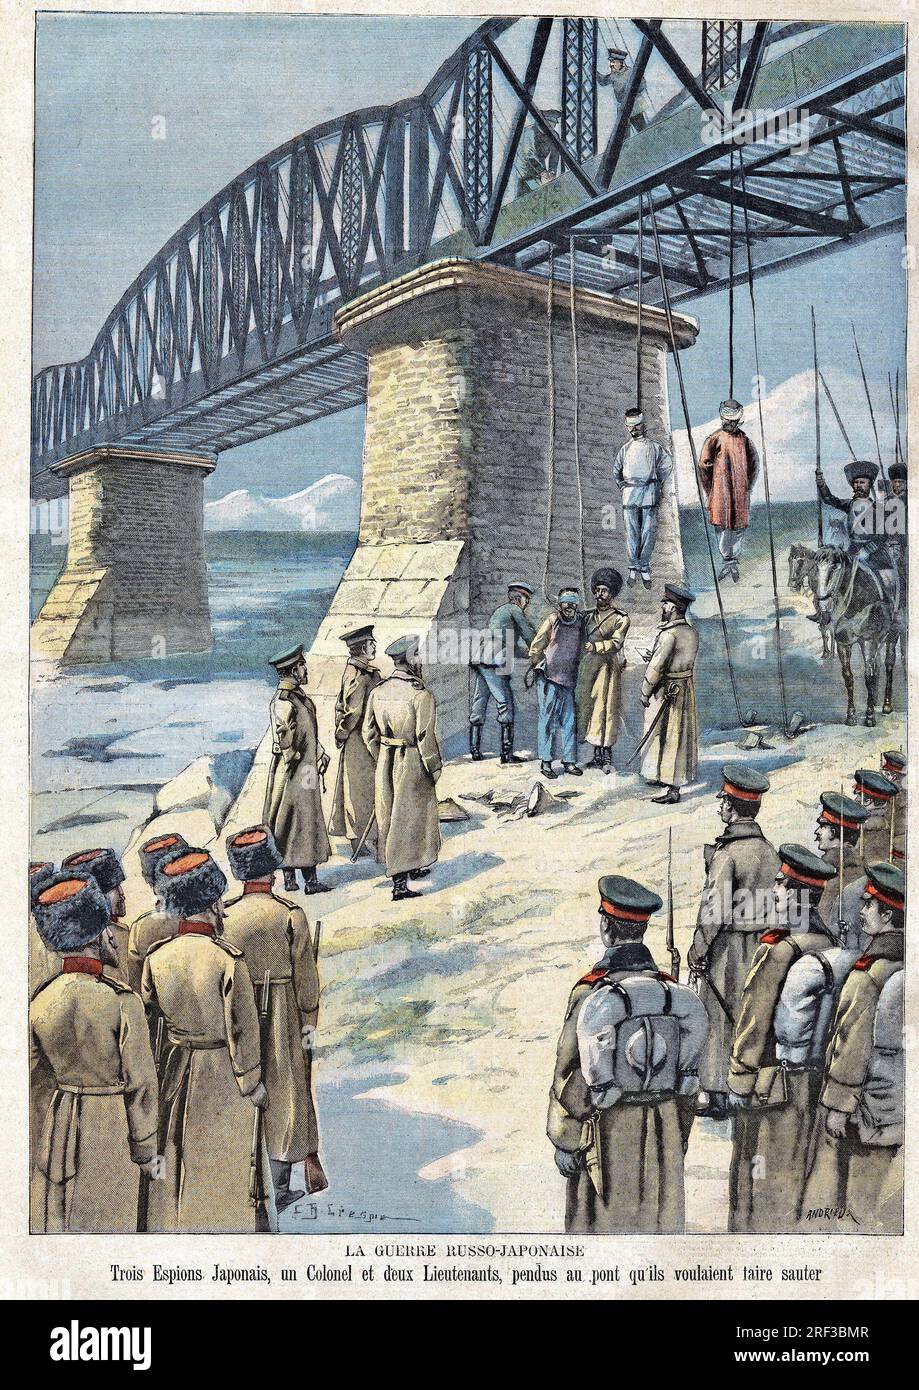 Pendaison de 3 espions Japonais par les Russes, qui projetaient de faire sauter le pont. Gravure in 'Le Petit Parisien', le 13031904. Stock Photo